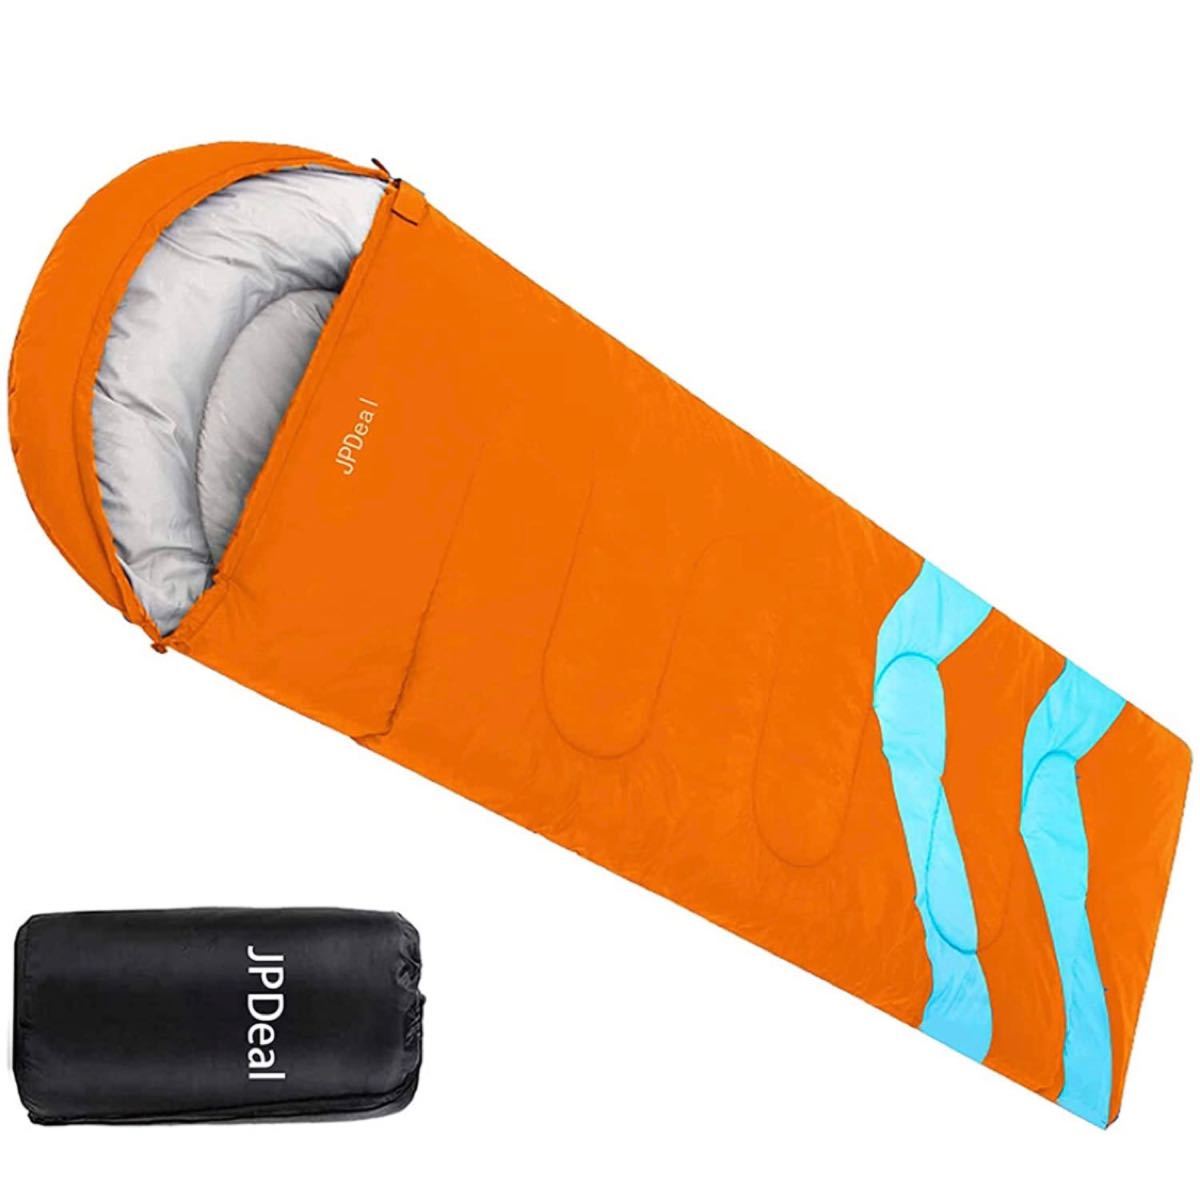 寝袋 封筒型 軽量 保温 210T防水シュラフ コンパクト アウトドア キャンプ 登山 車中泊 防災用